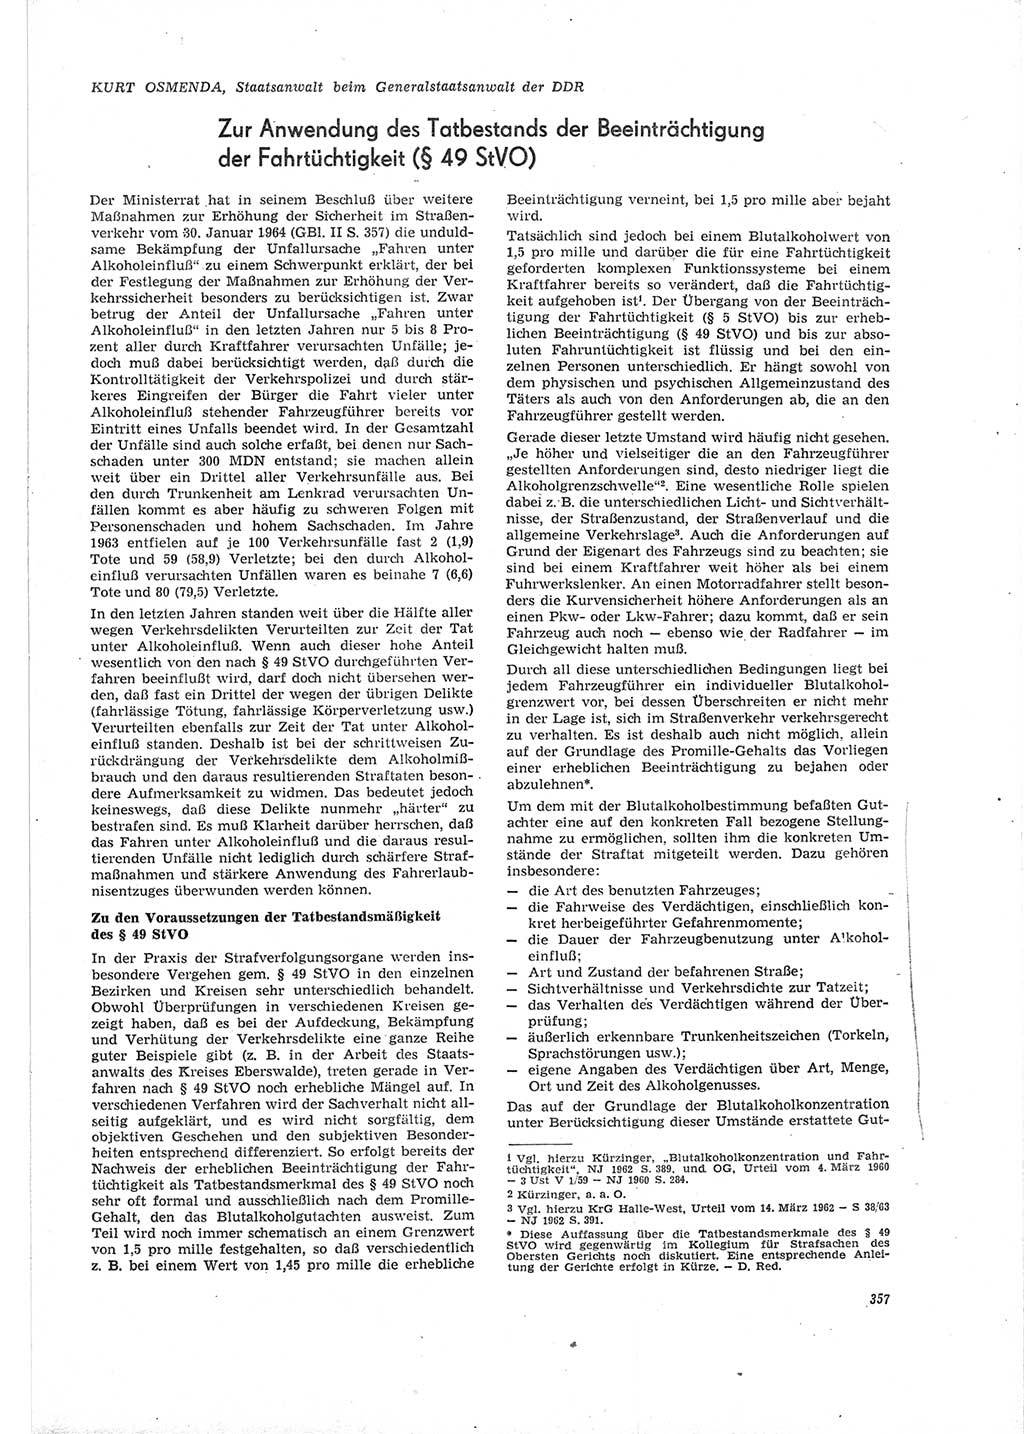 Neue Justiz (NJ), Zeitschrift für Recht und Rechtswissenschaft [Deutsche Demokratische Republik (DDR)], 19. Jahrgang 1965, Seite 357 (NJ DDR 1965, S. 357)